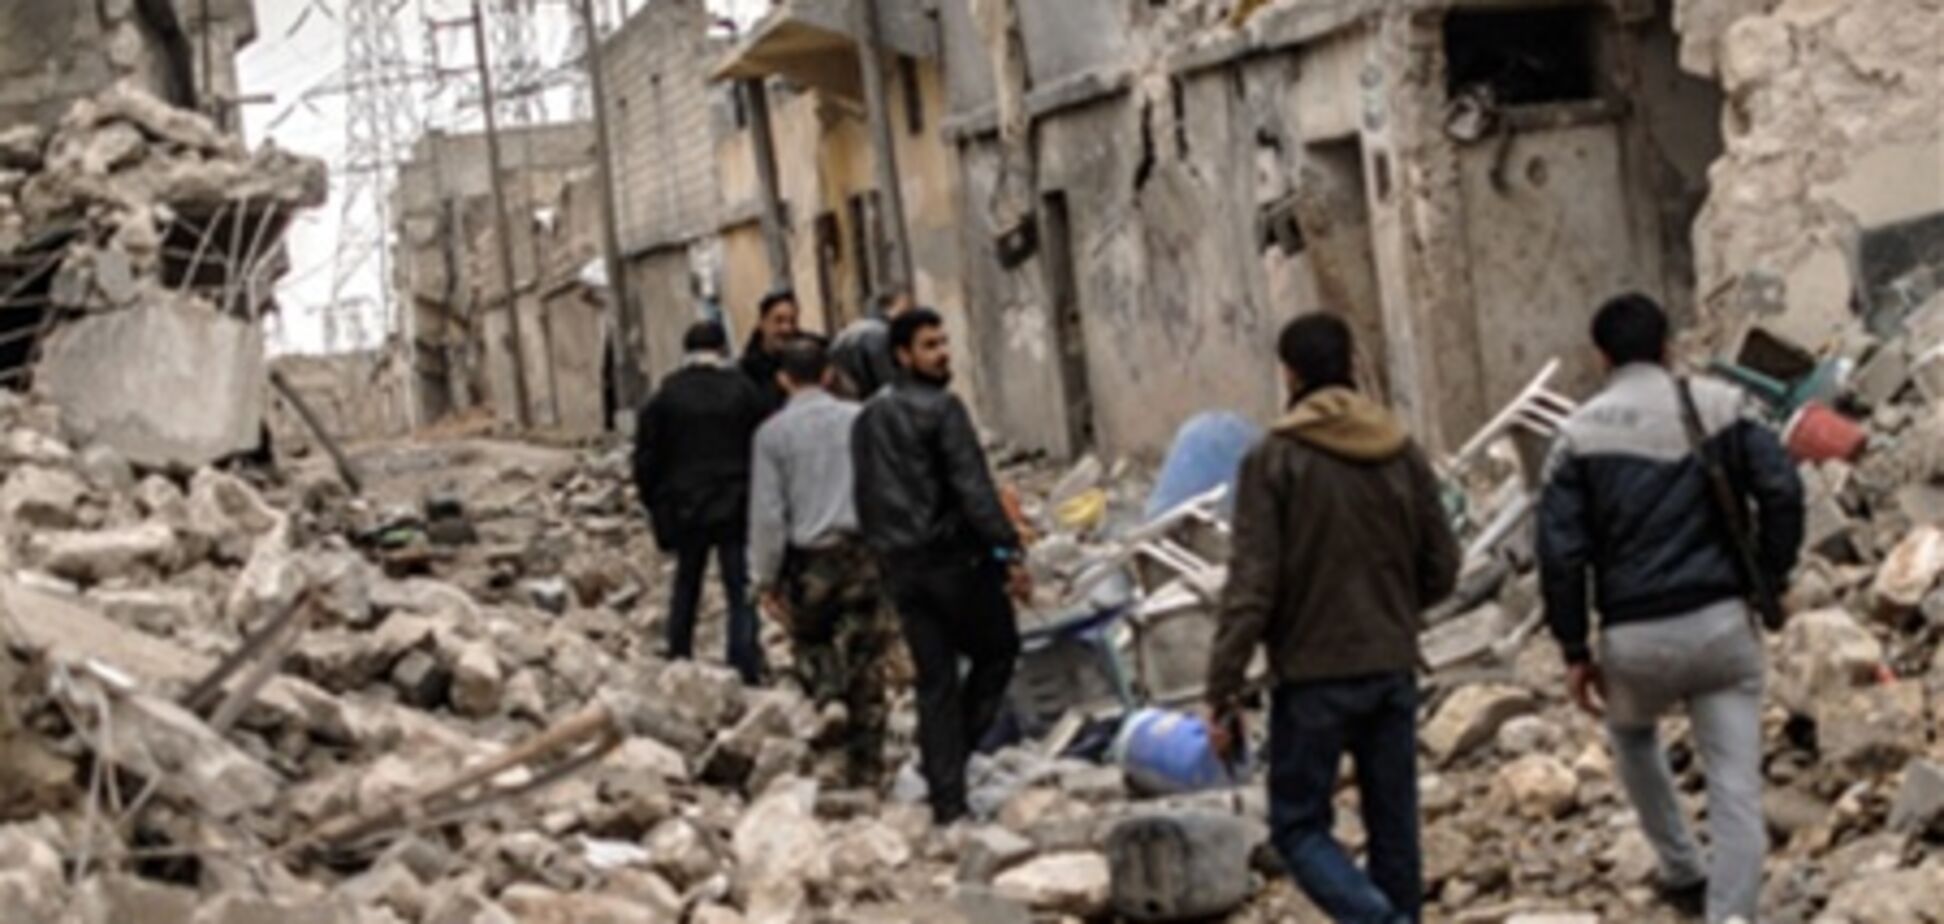 ООН: кількість жертв конфлікту в Сирії наближається до 70 тисячам